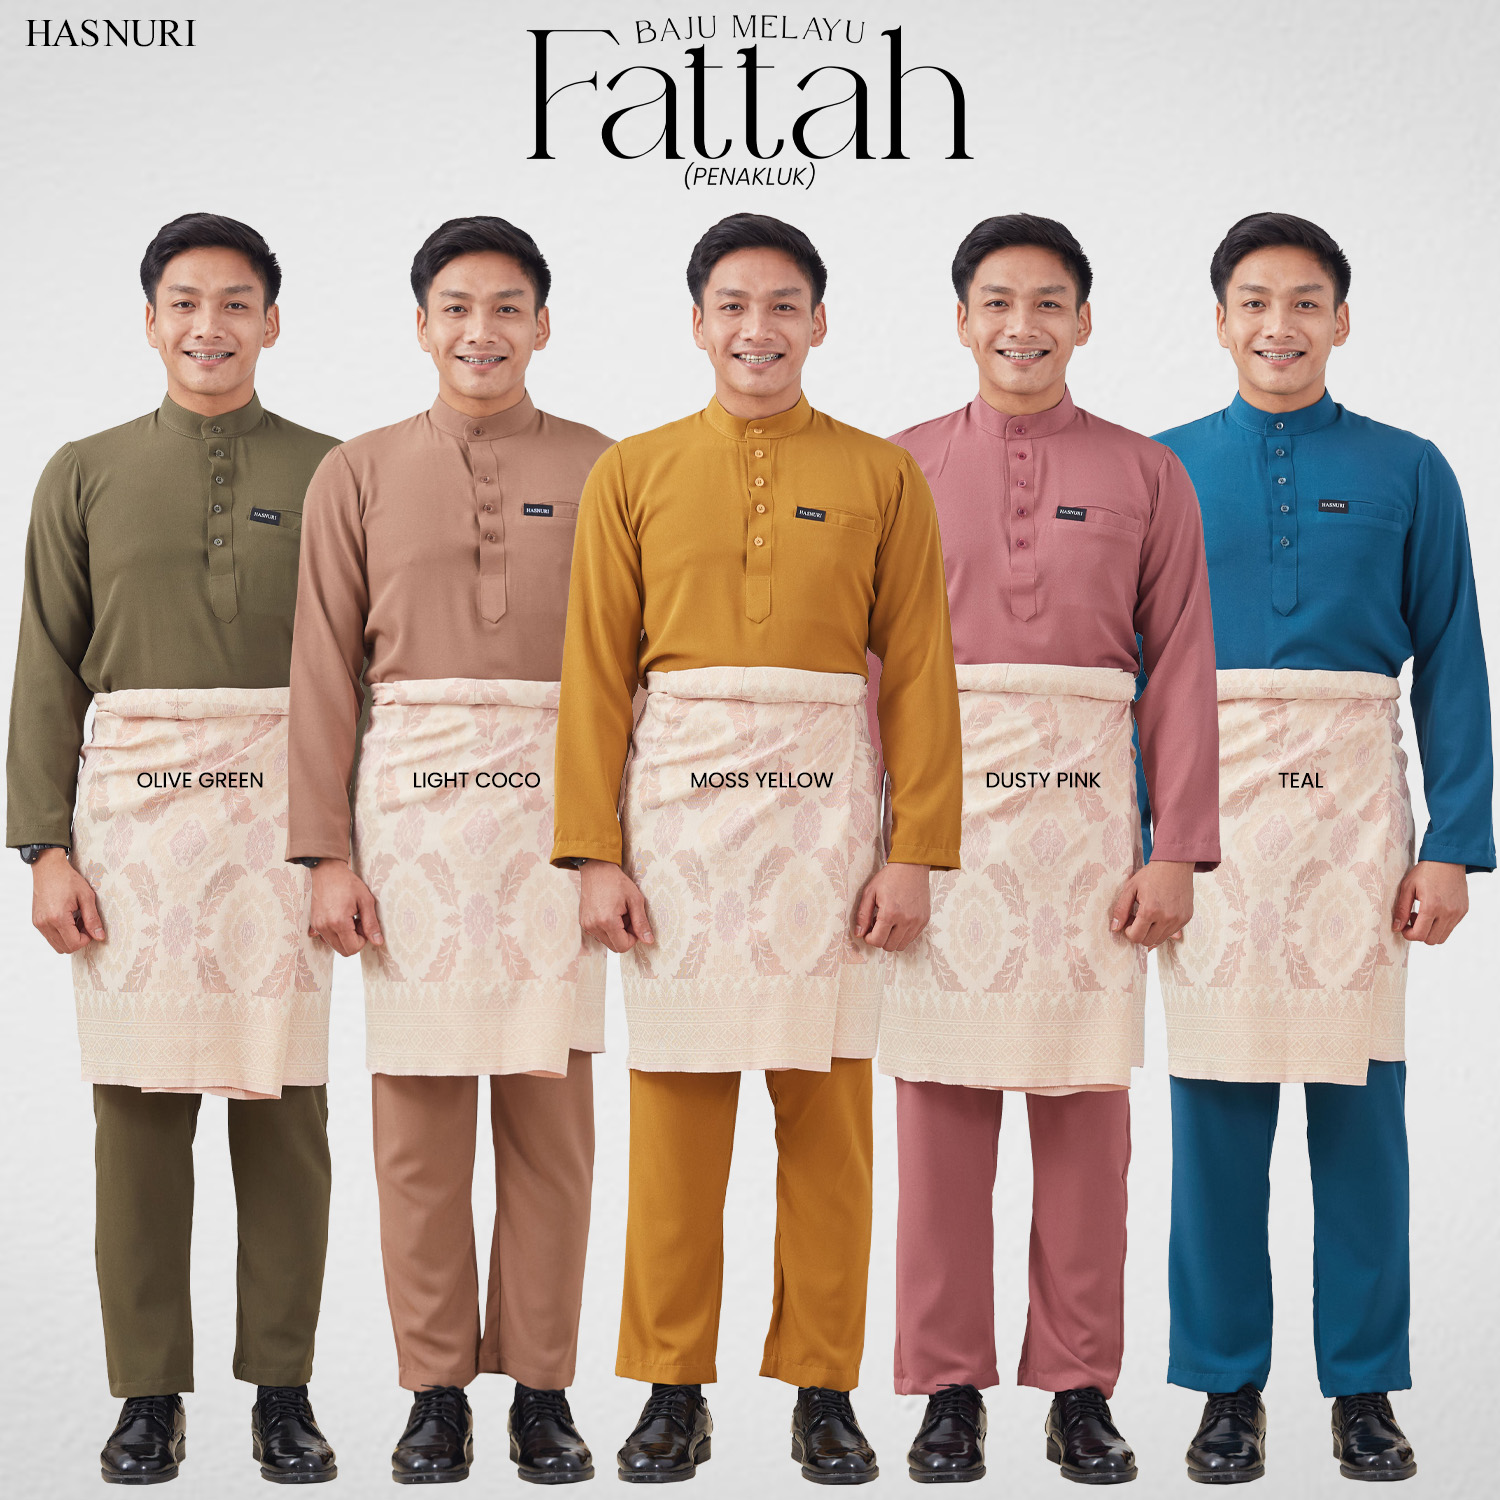 Baju Melayu Fattah - Teal